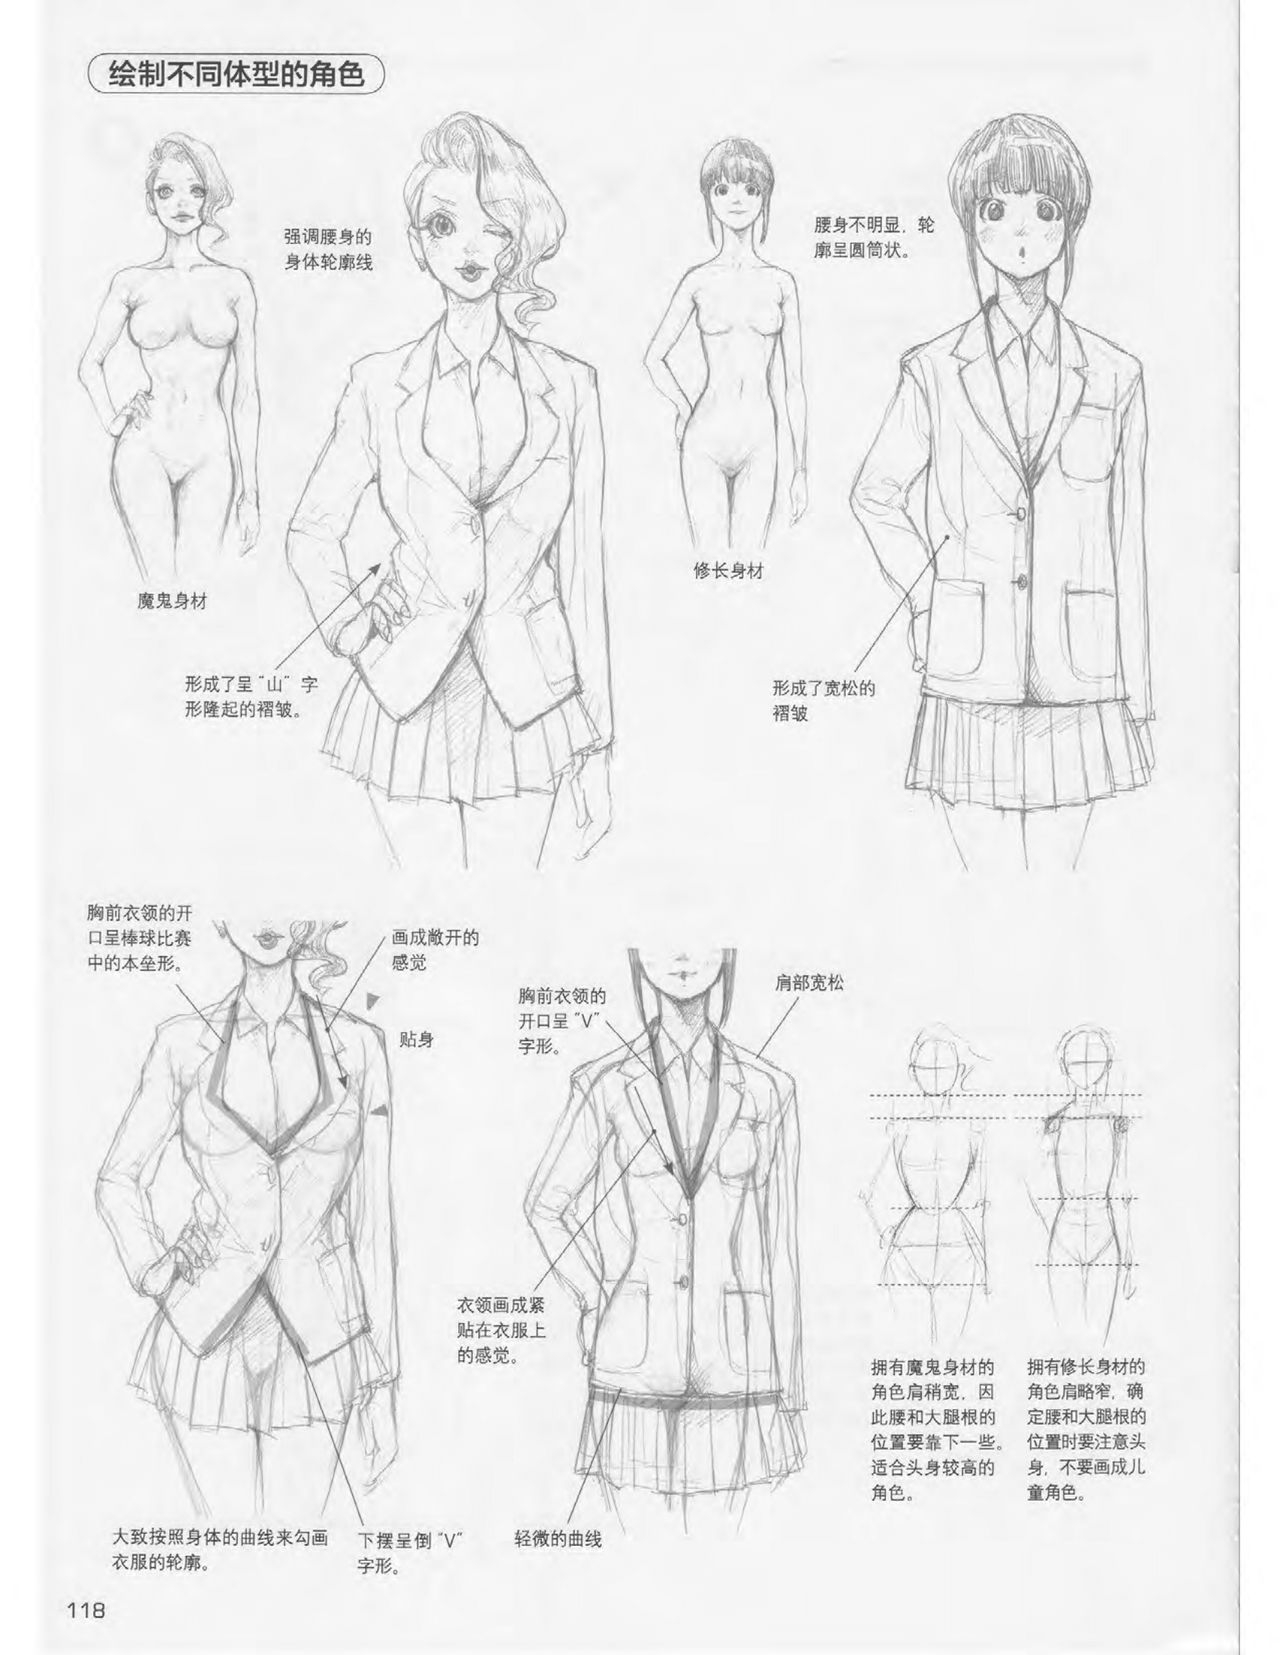 Japanese Manga Master Lecture 3: Lin Akira and Kakumaru Maru Talk About Glamorous Character Modeling 118